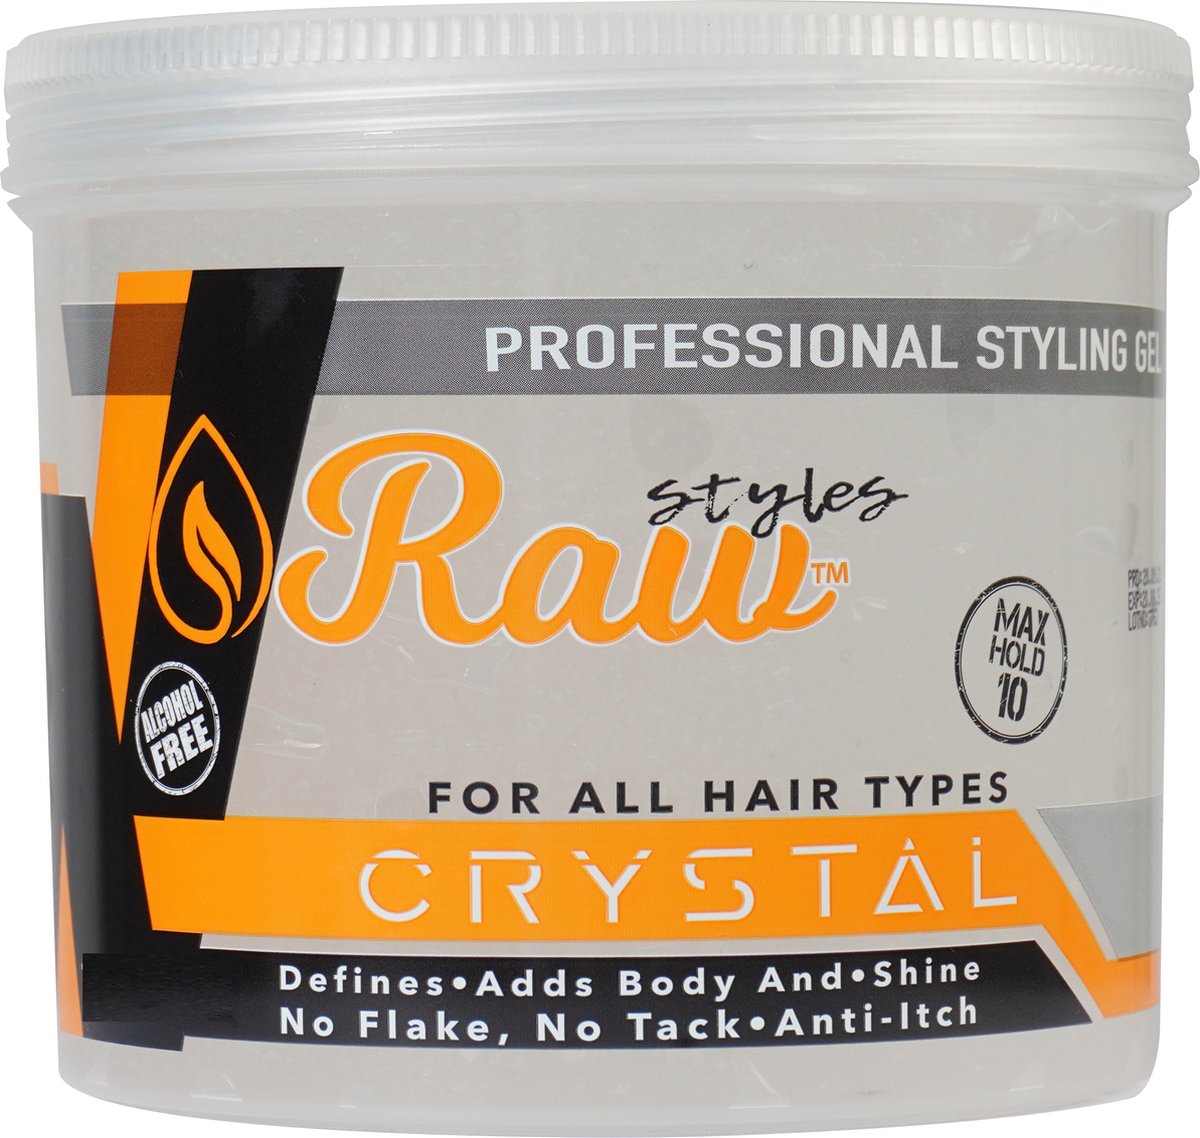 Raw Krystal Styling Gel 500ml